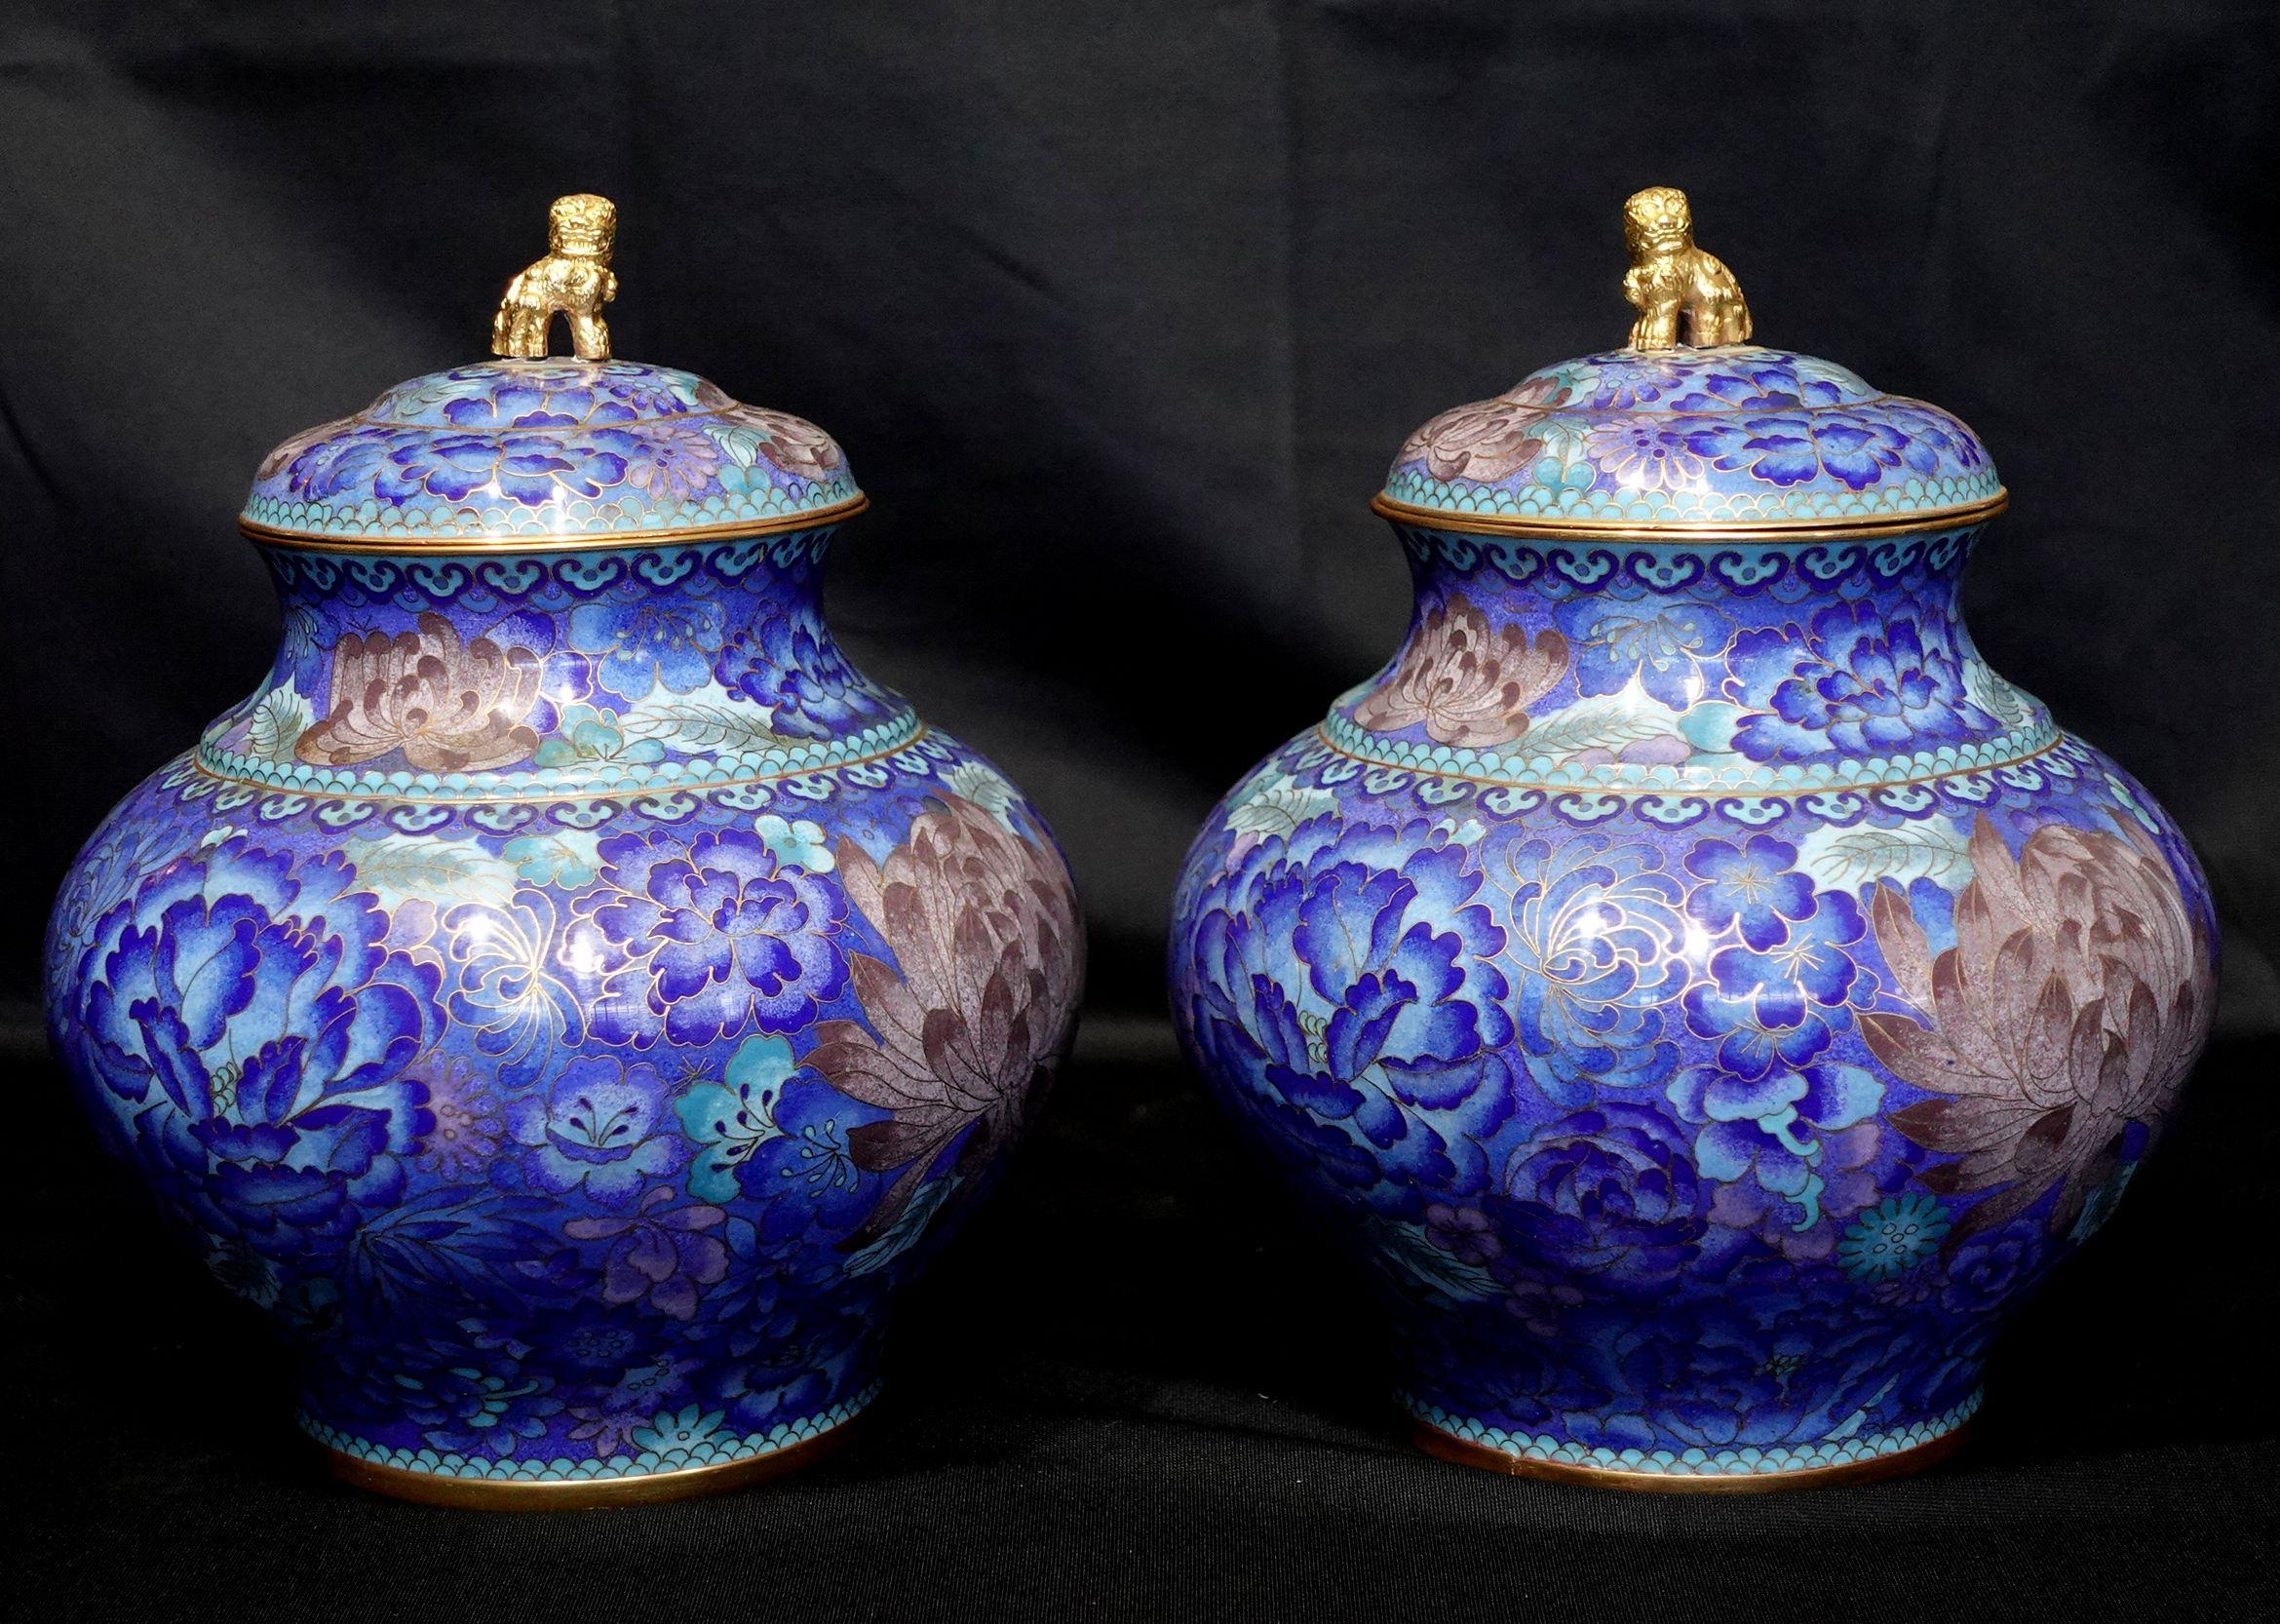 Un travail de qualité avec des détails étonnants est présenté sur cette paire de jarres à couvercle en bronze chinois cloisonné représentant une scène de fleurs sur un fond bleu avec des couleurs vives de bleu, rouge-brun, et des finales de lion en